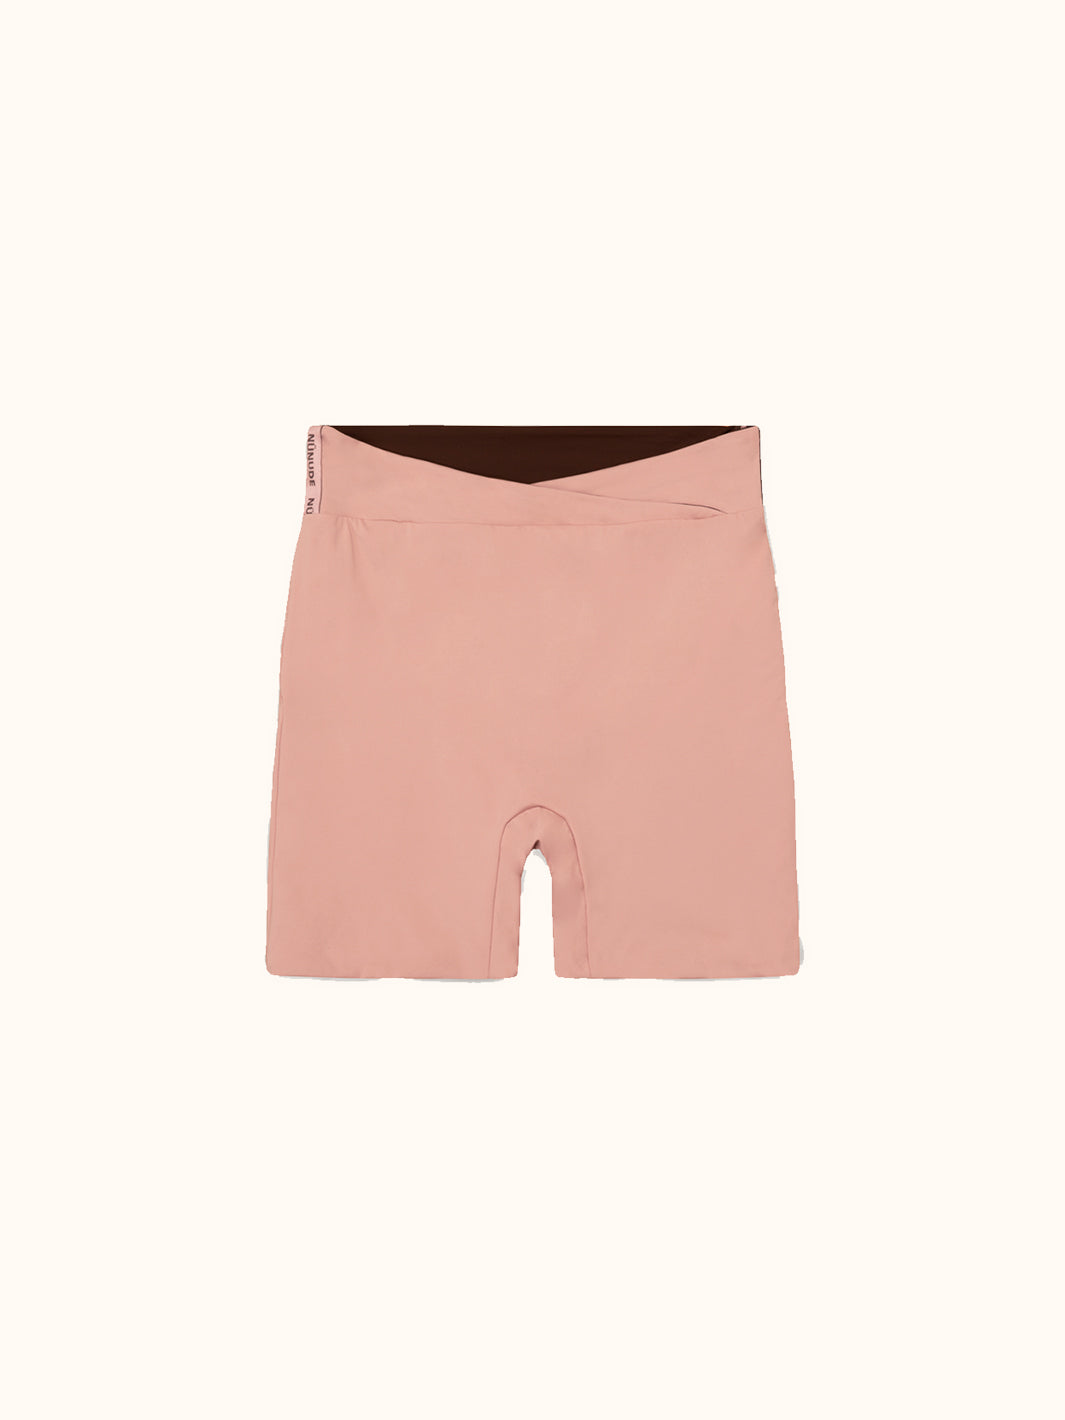 Activewear Shorts Set Blush/Brown